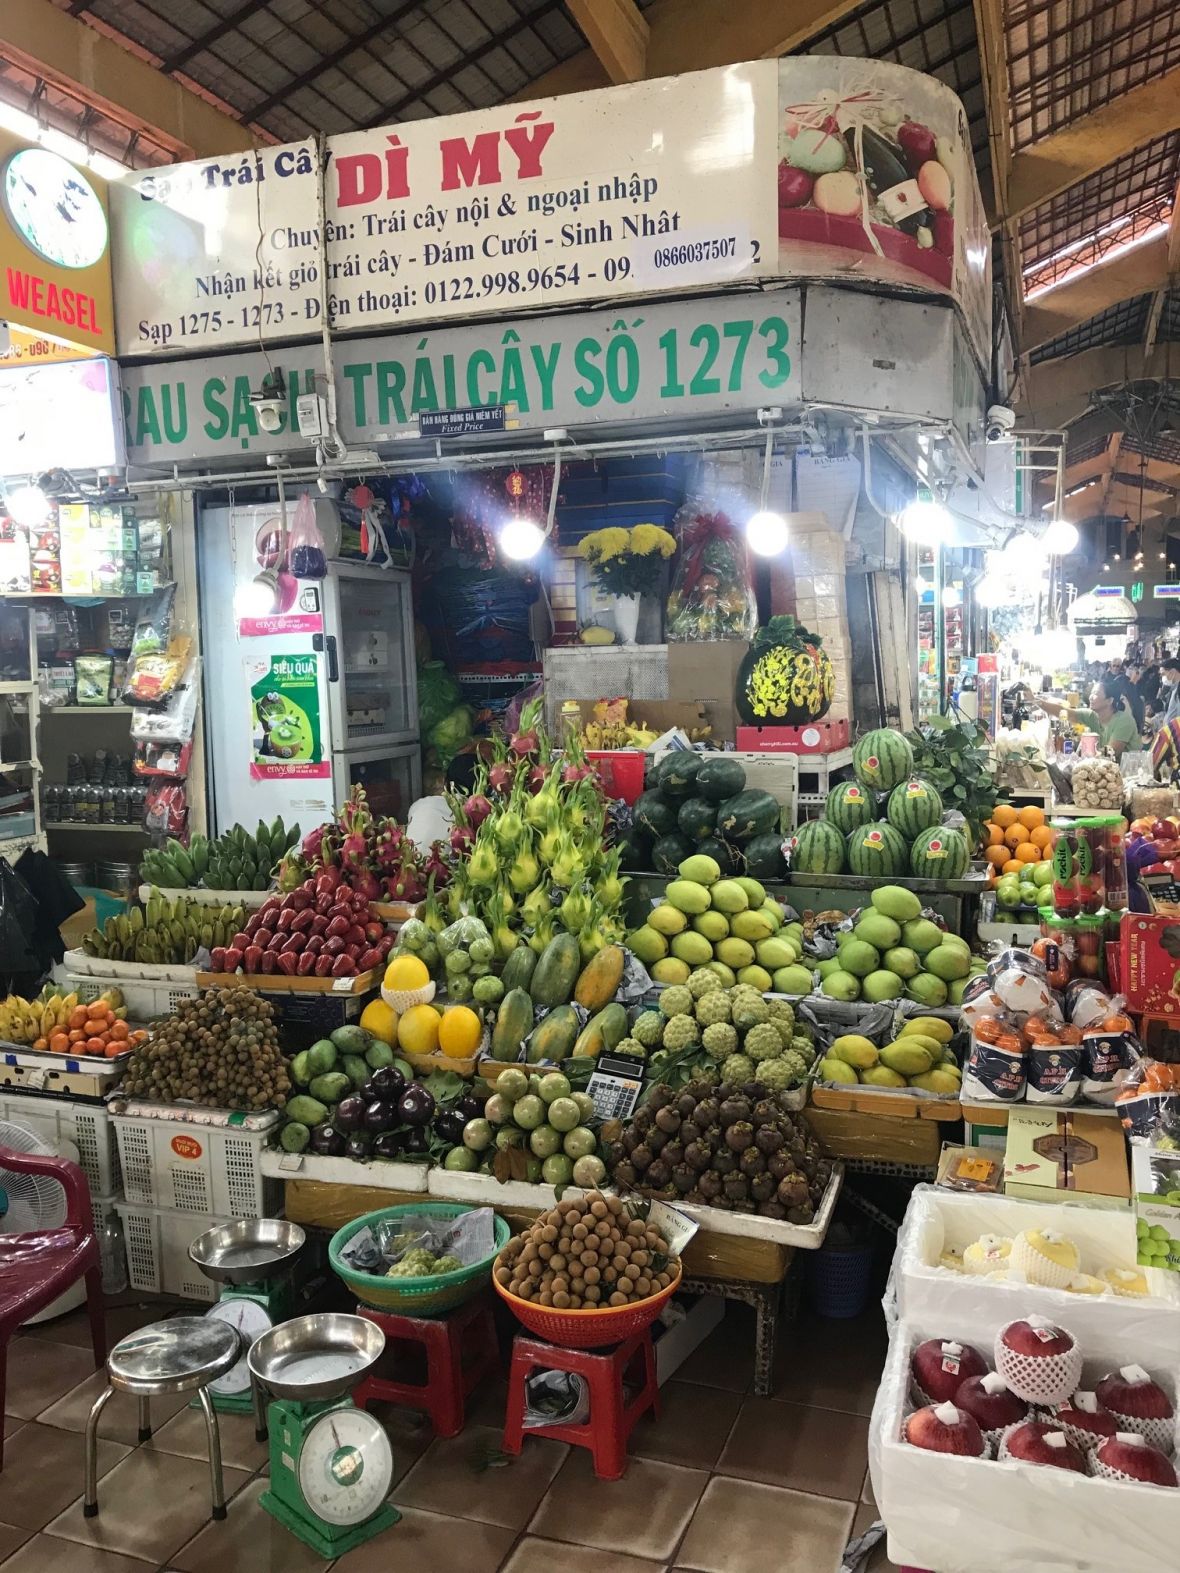 Ben Thanh market in Vietnam